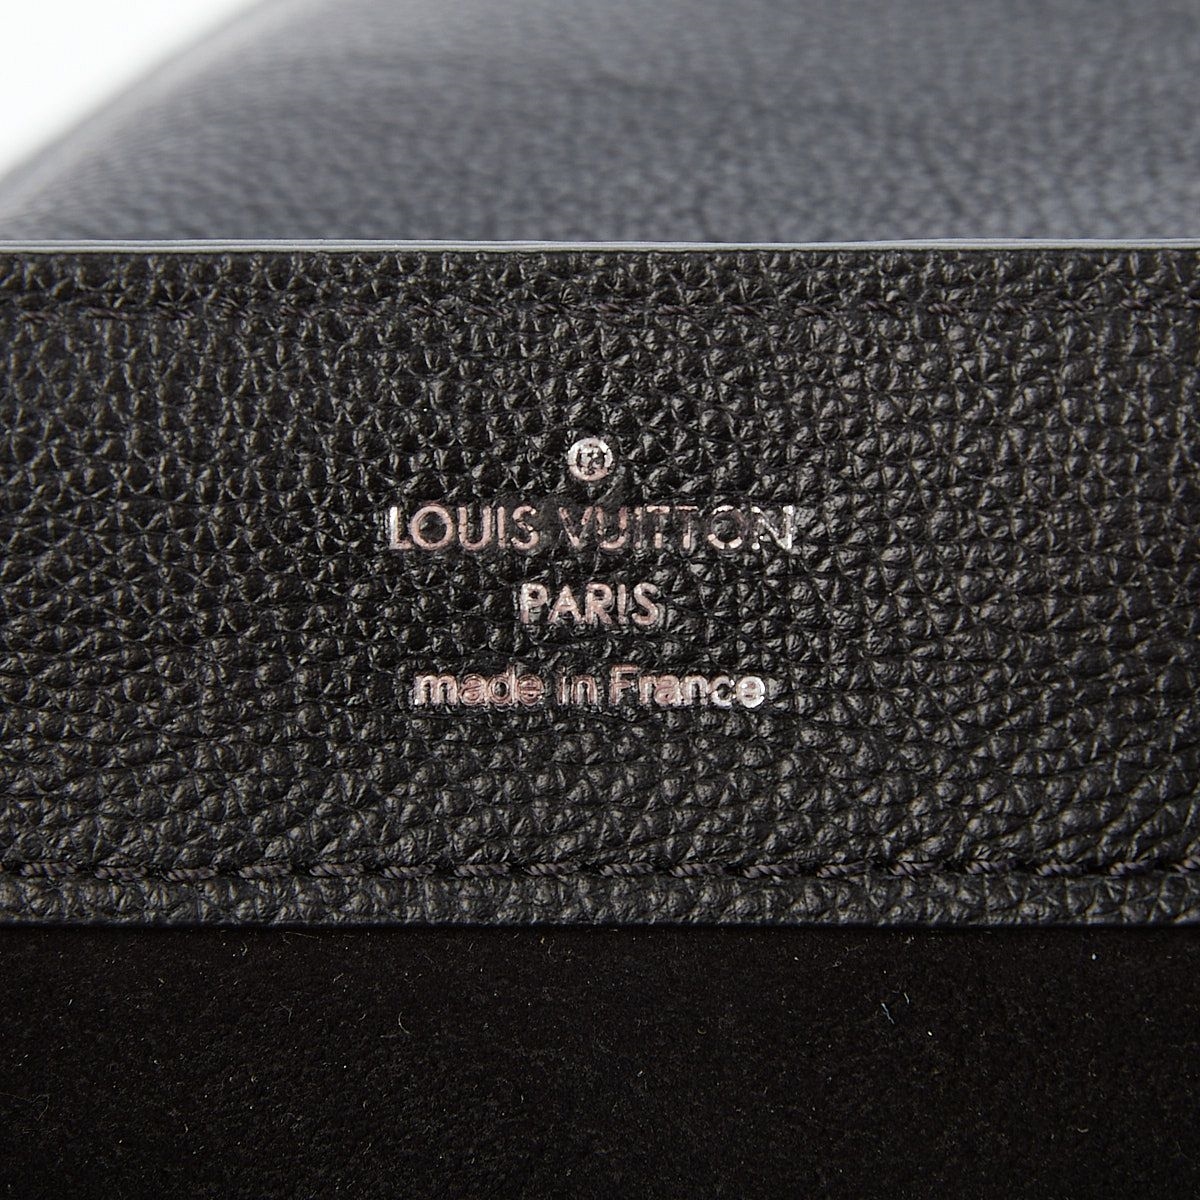 At Auction: Louis Vuitton, LOUIS VUITTON BLACK LEATHER MINI